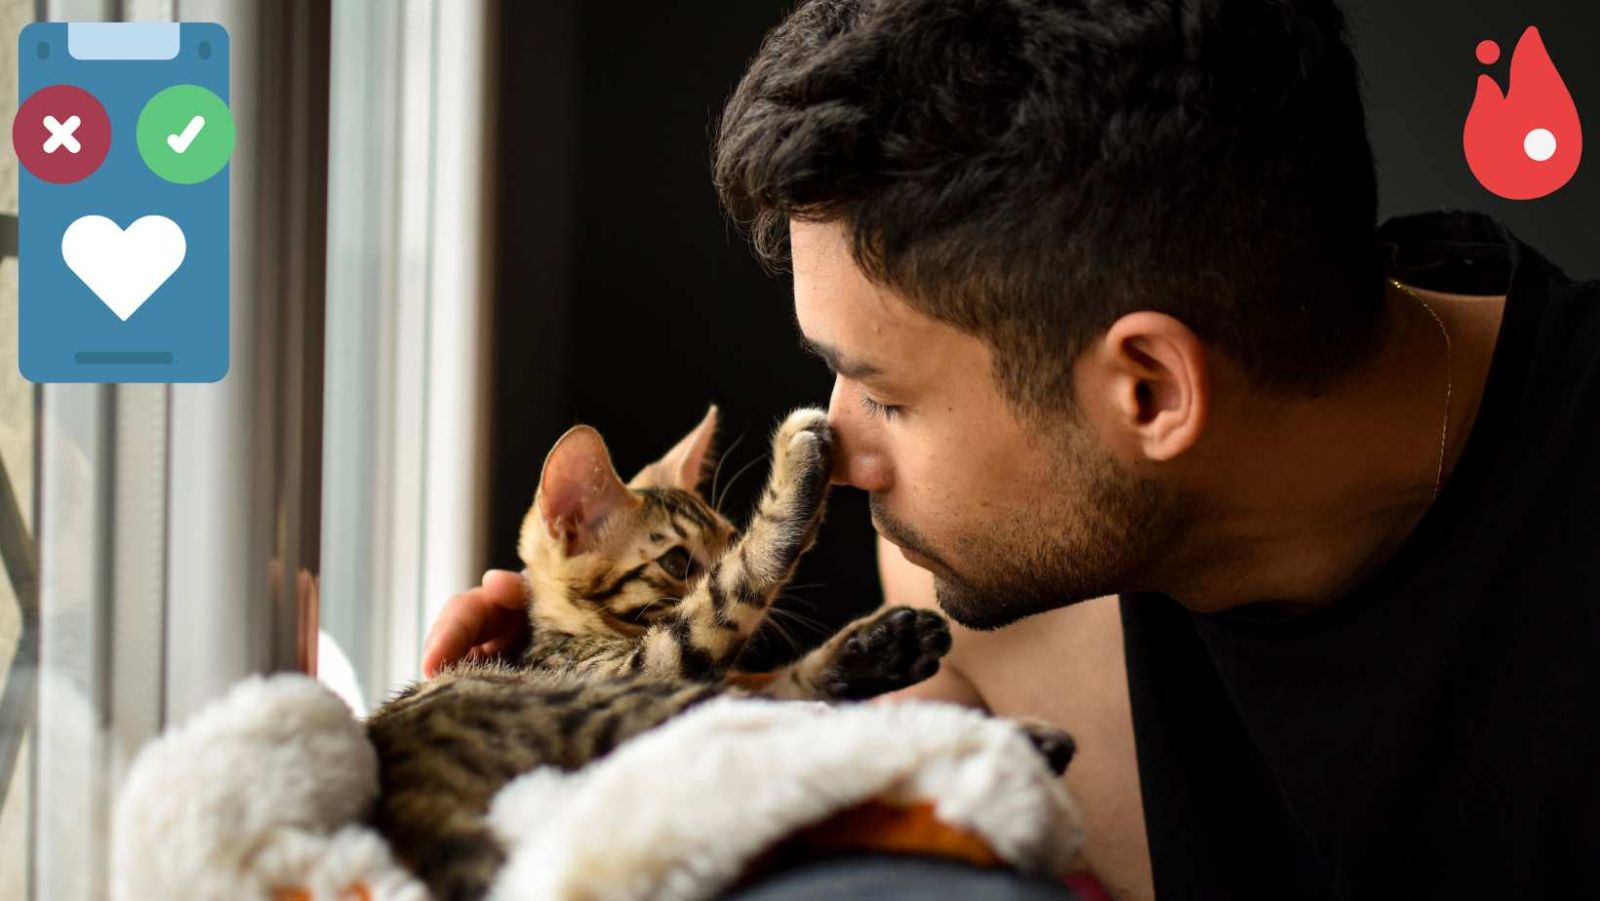 Sur les sites de rencontre, les hommes avec des chats en photo sont moins sollicités, selon cette étude